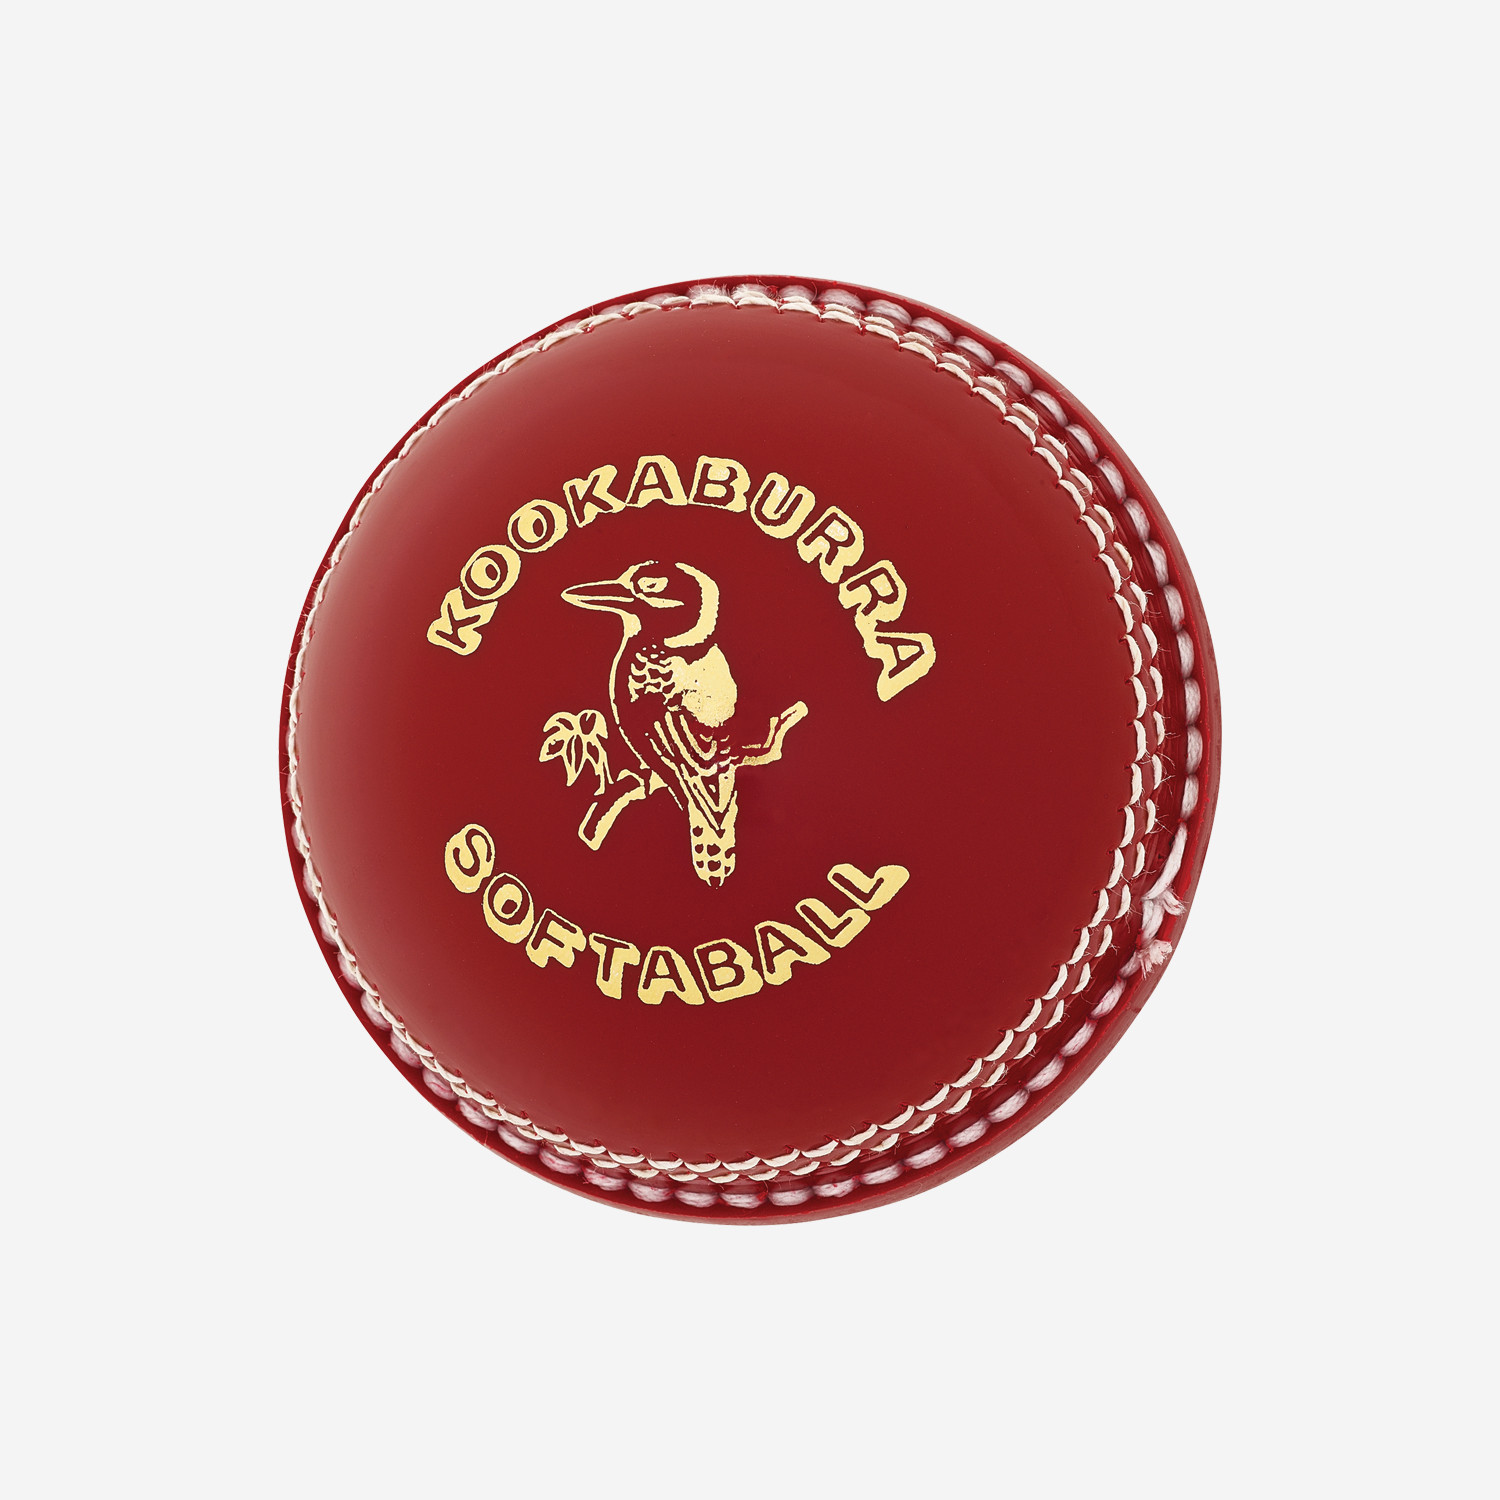 Kookaburra Softaball Cricket Ball